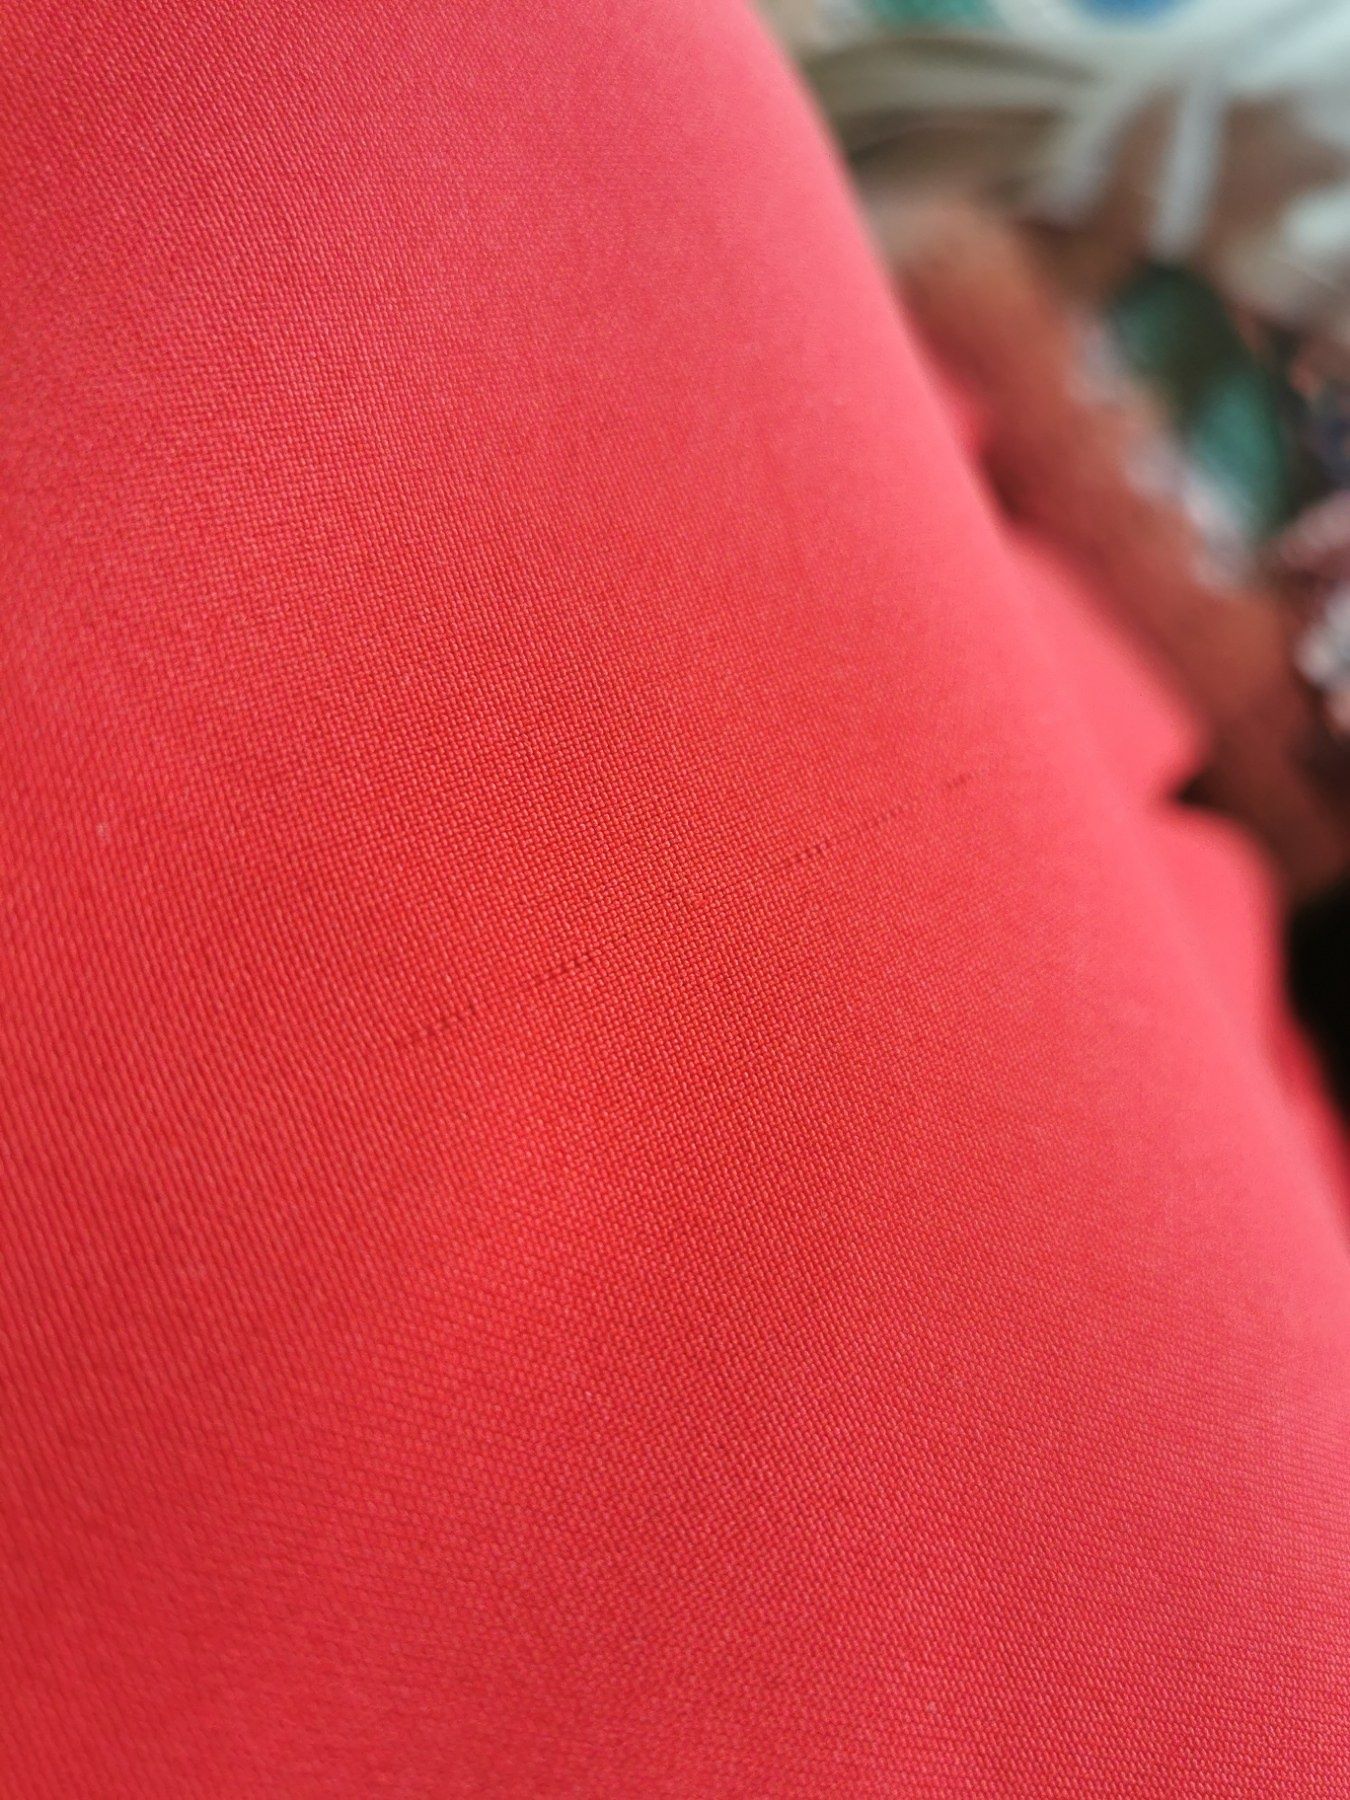 Червена дамска рокля размер XS-S